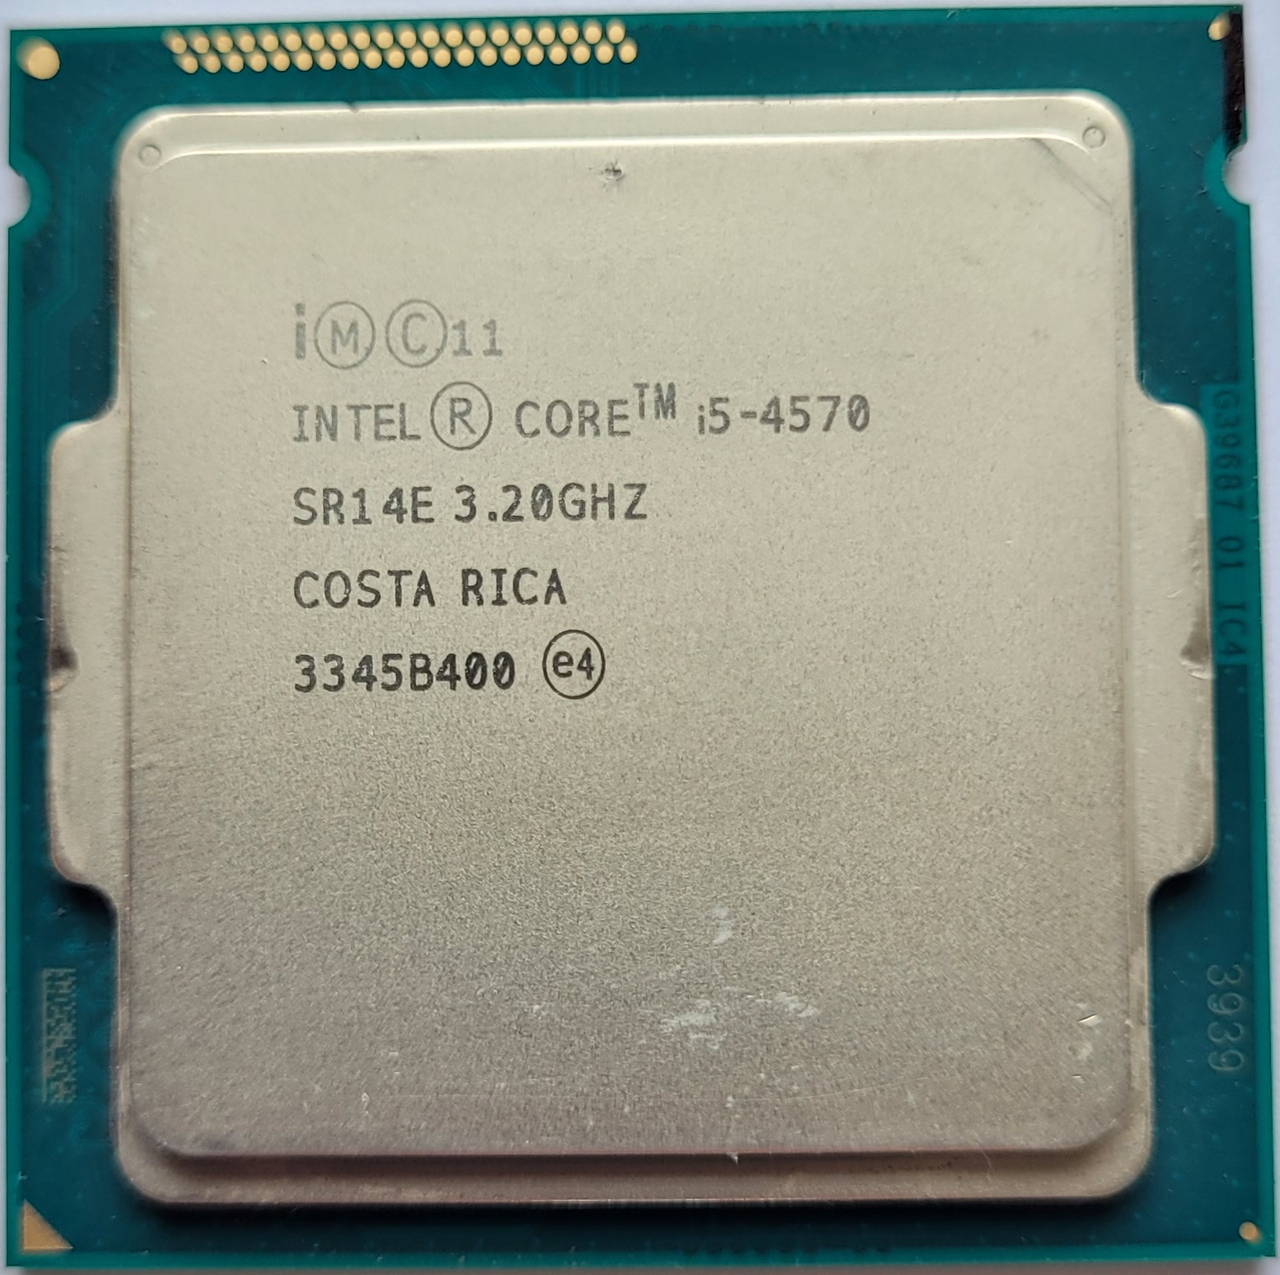 Процесор Intel Core i5-4570 SR14E 3.2GHz up 3.6GHz 6M Cache Socket 1150 Б/В, фото 1